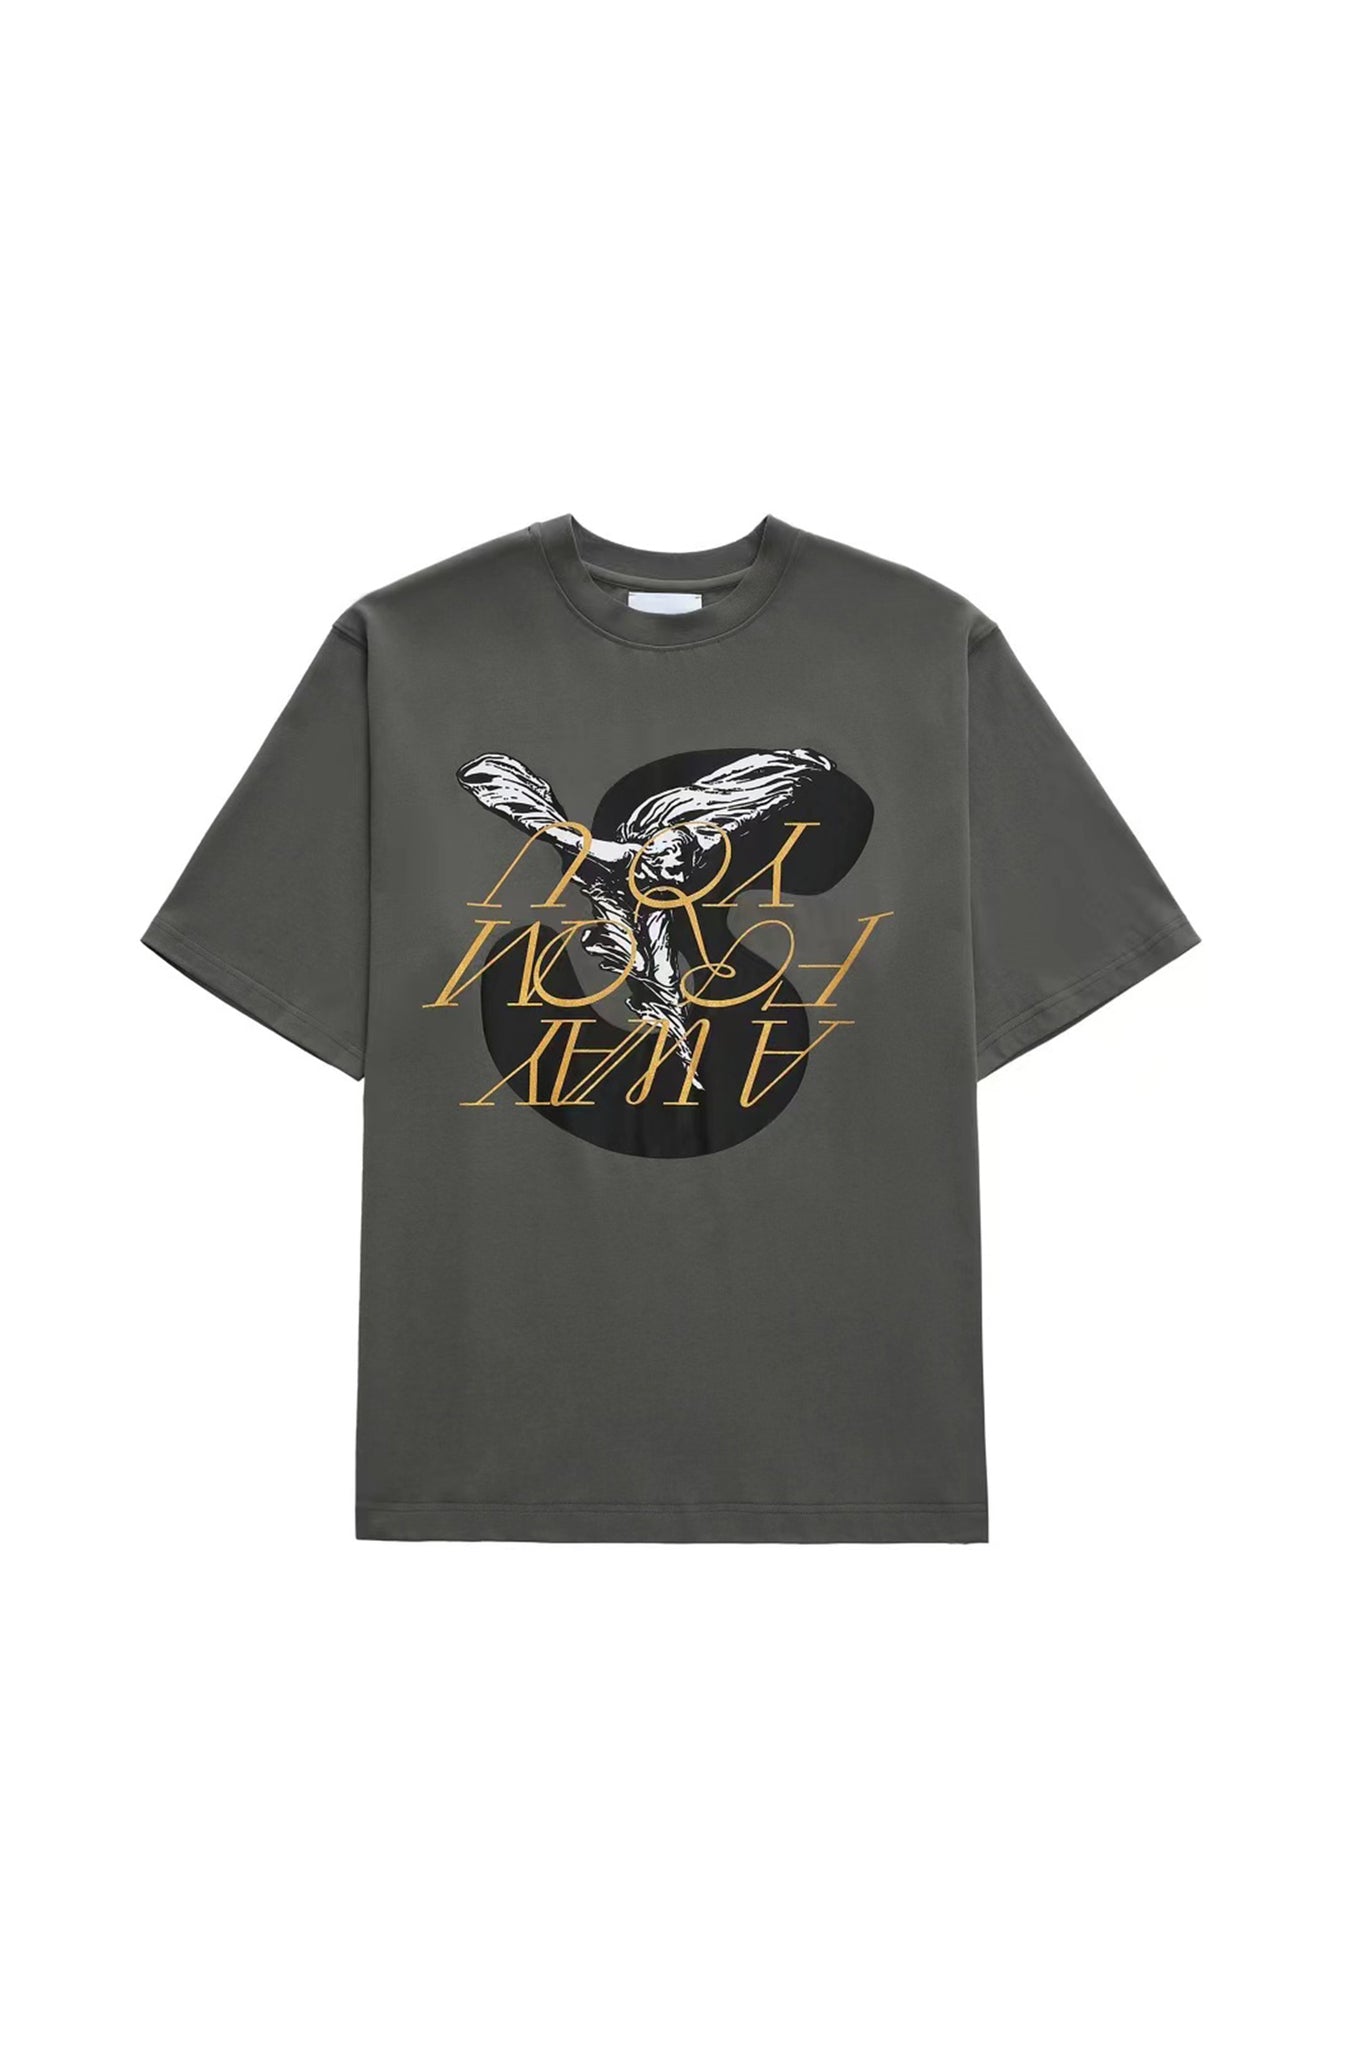 AINTSHY Grey Printed T-shirt